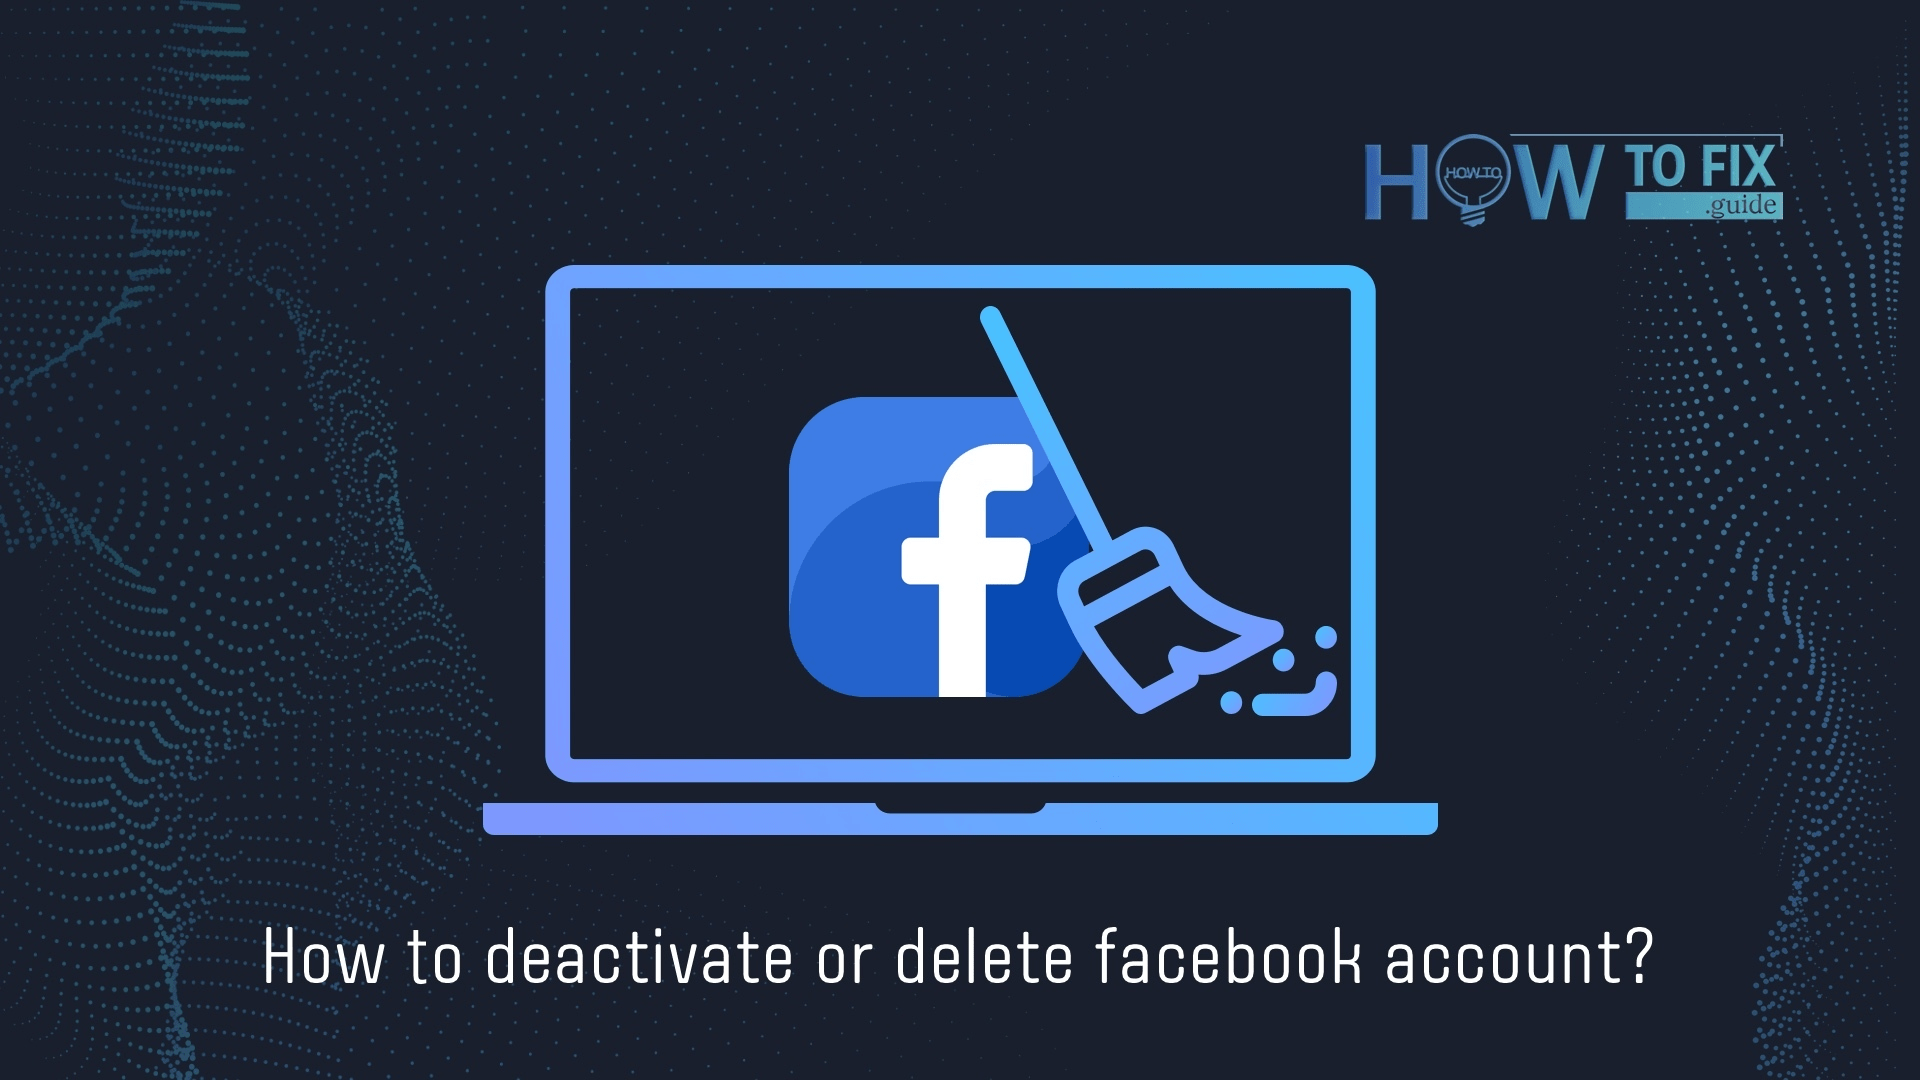 फेसबुक अकाउंट को डीएक्टिवेट या डिलीट कैसे करें